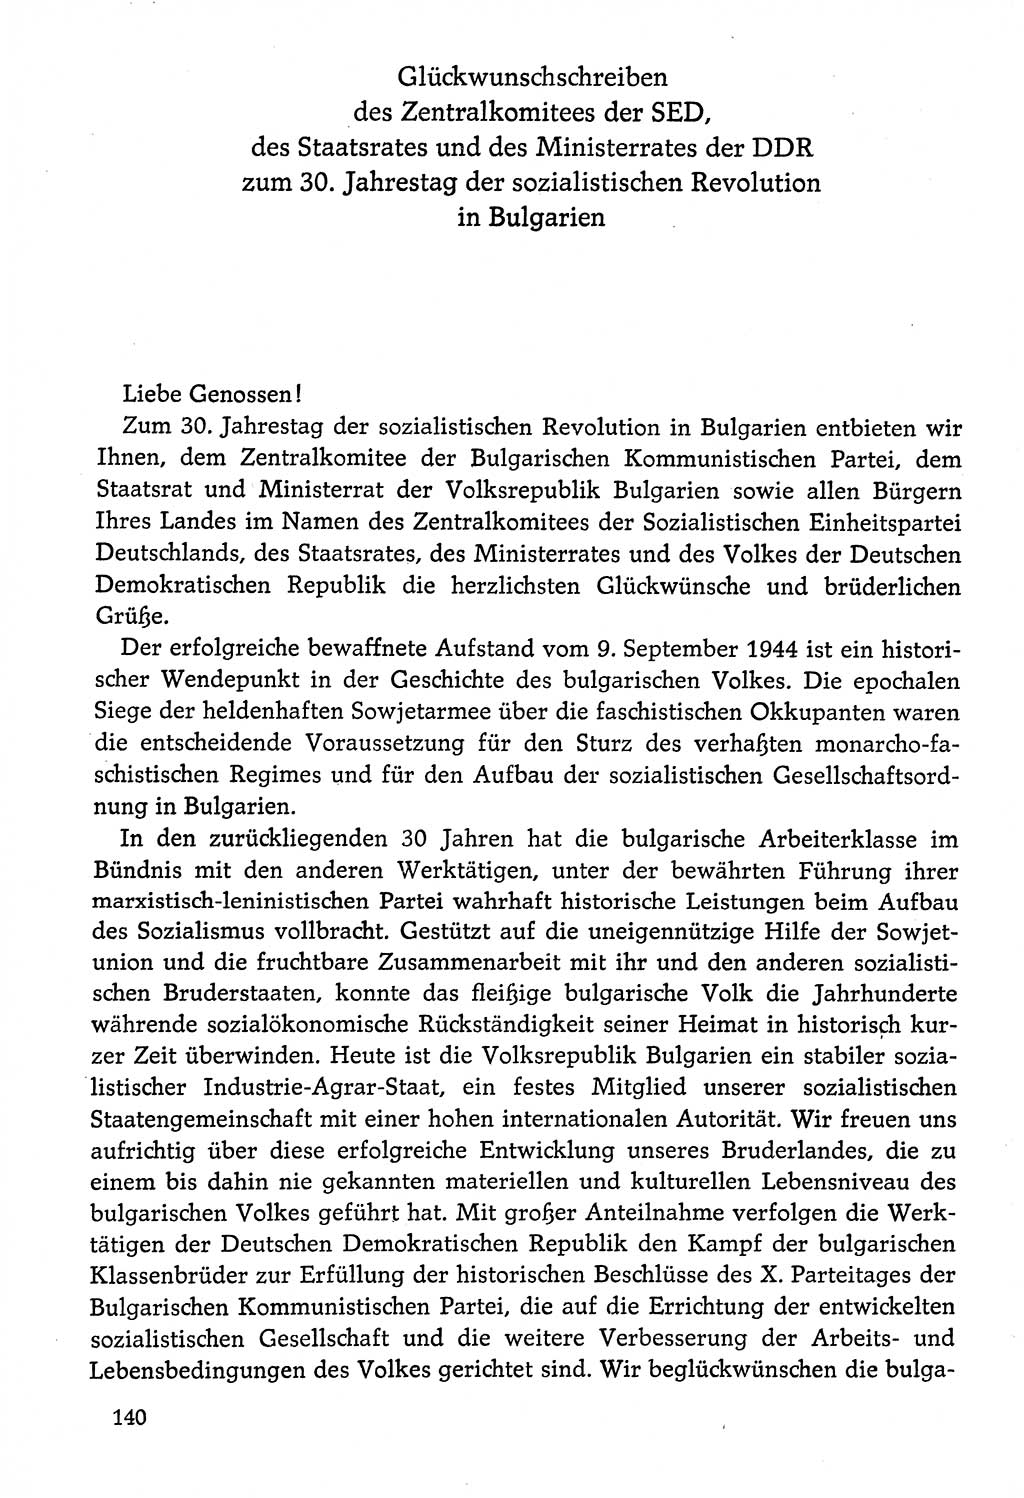 Dokumente der Sozialistischen Einheitspartei Deutschlands (SED) [Deutsche Demokratische Republik (DDR)] 1974-1975, Seite 140 (Dok. SED DDR 1978, Bd. ⅩⅤ, S. 140)